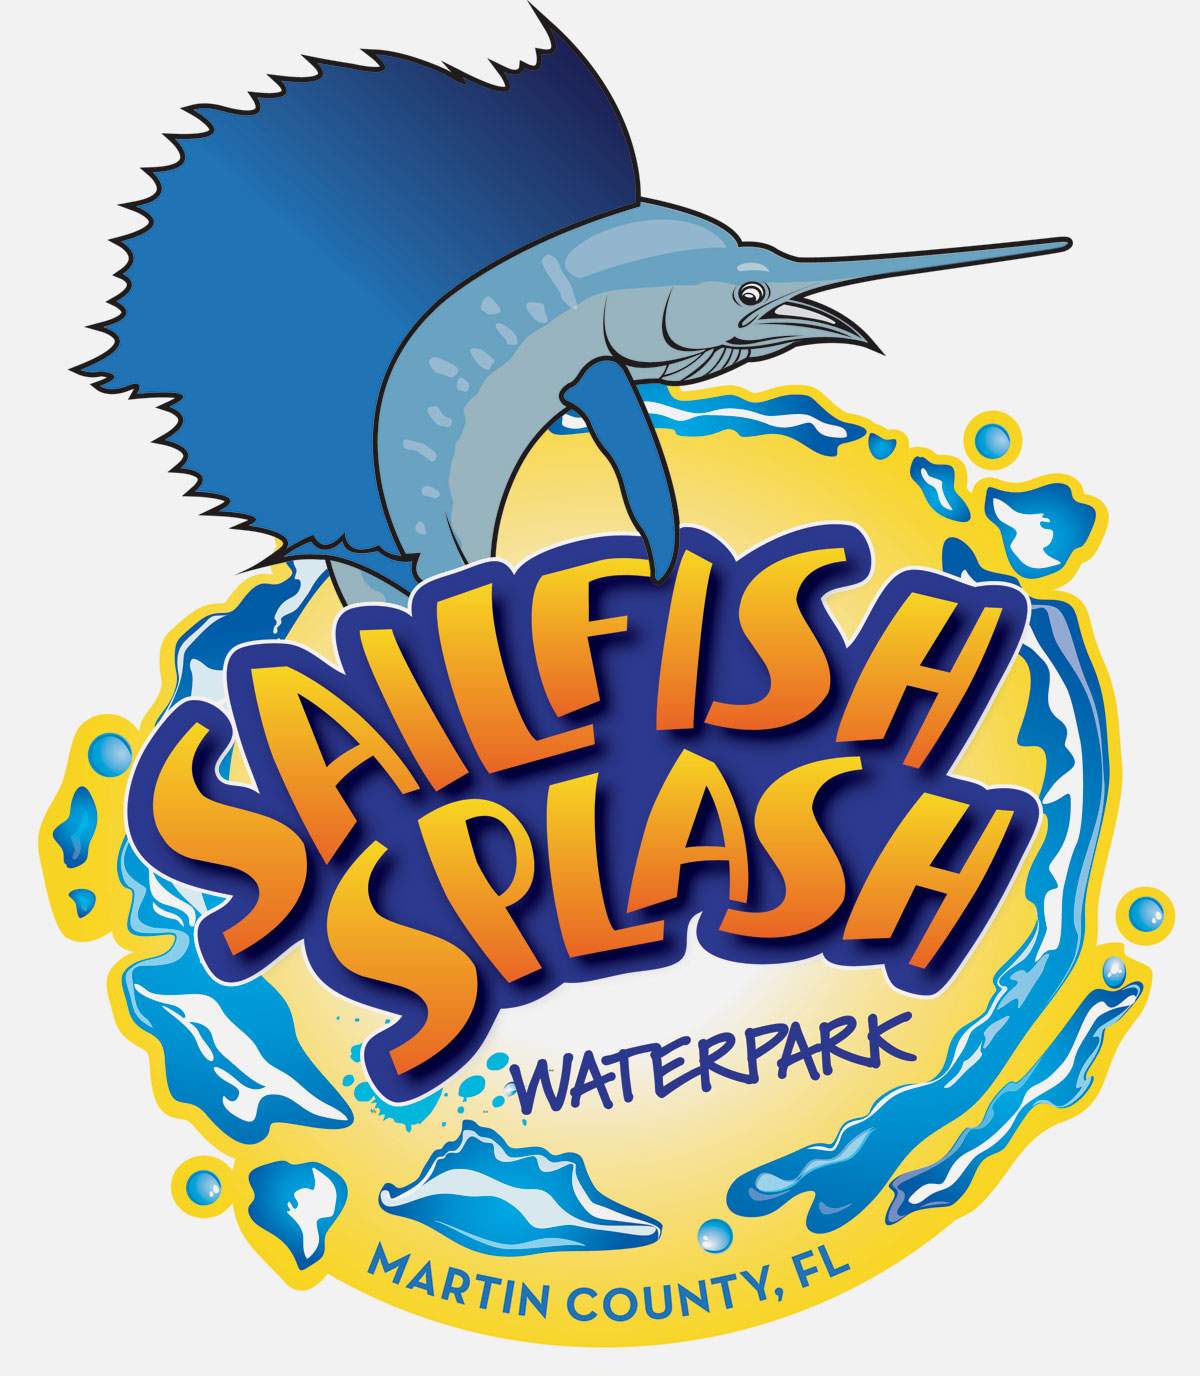 Sailfish Splash logo